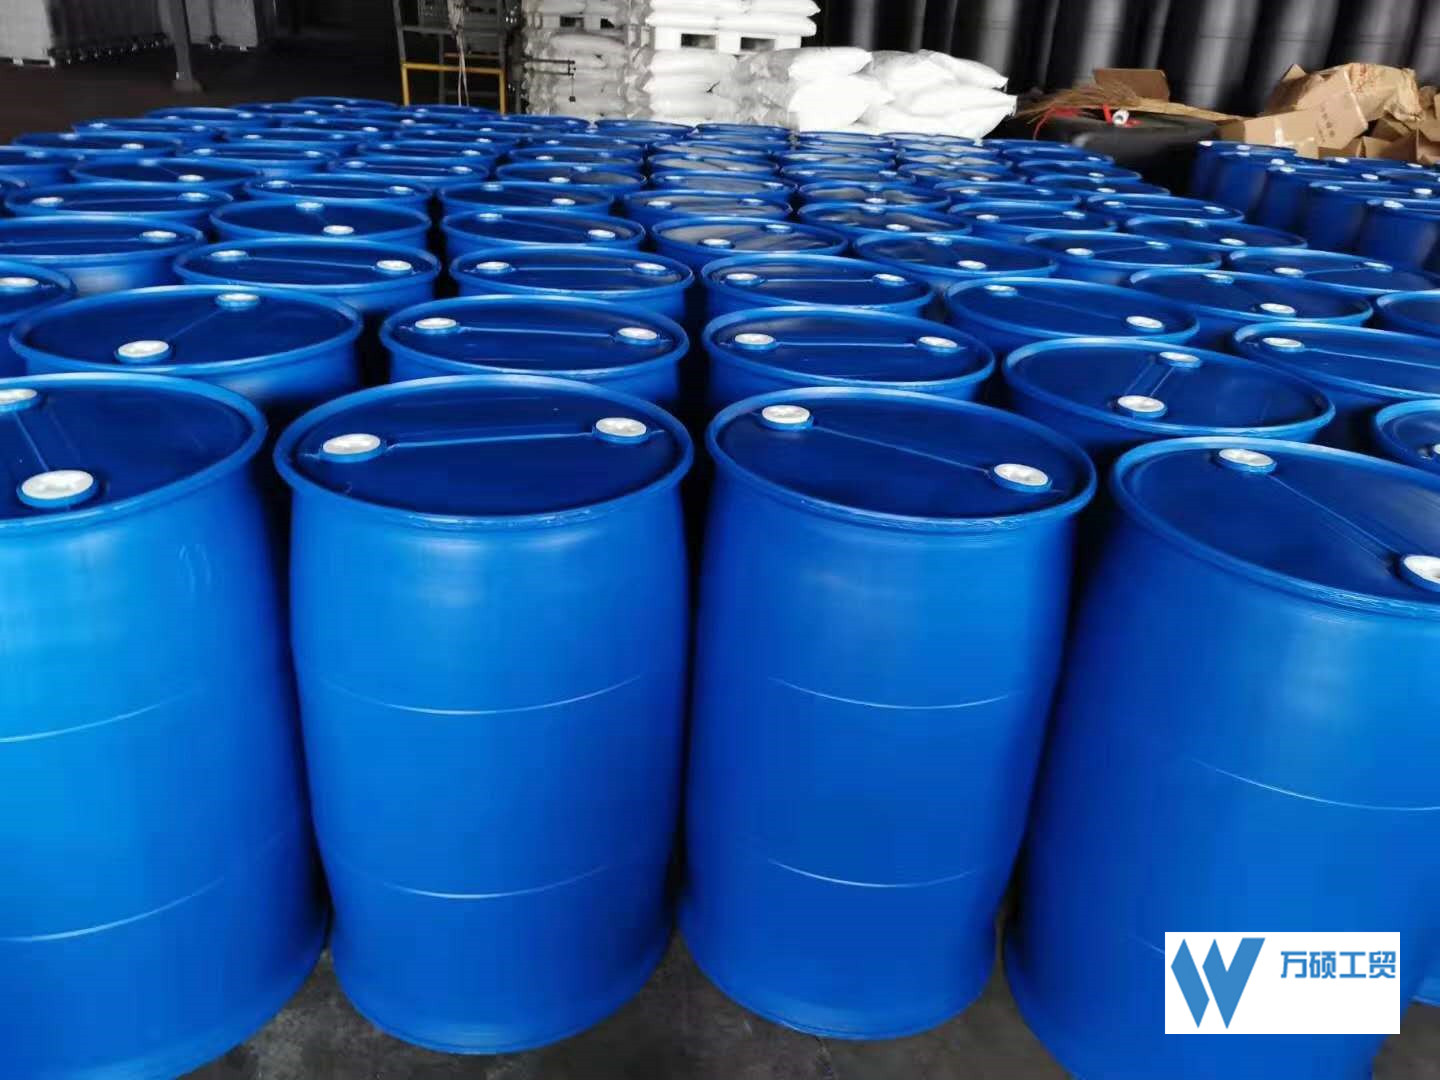 皮重10.5塑料桶塑料桶|单价|二手200公斤塑料桶价格